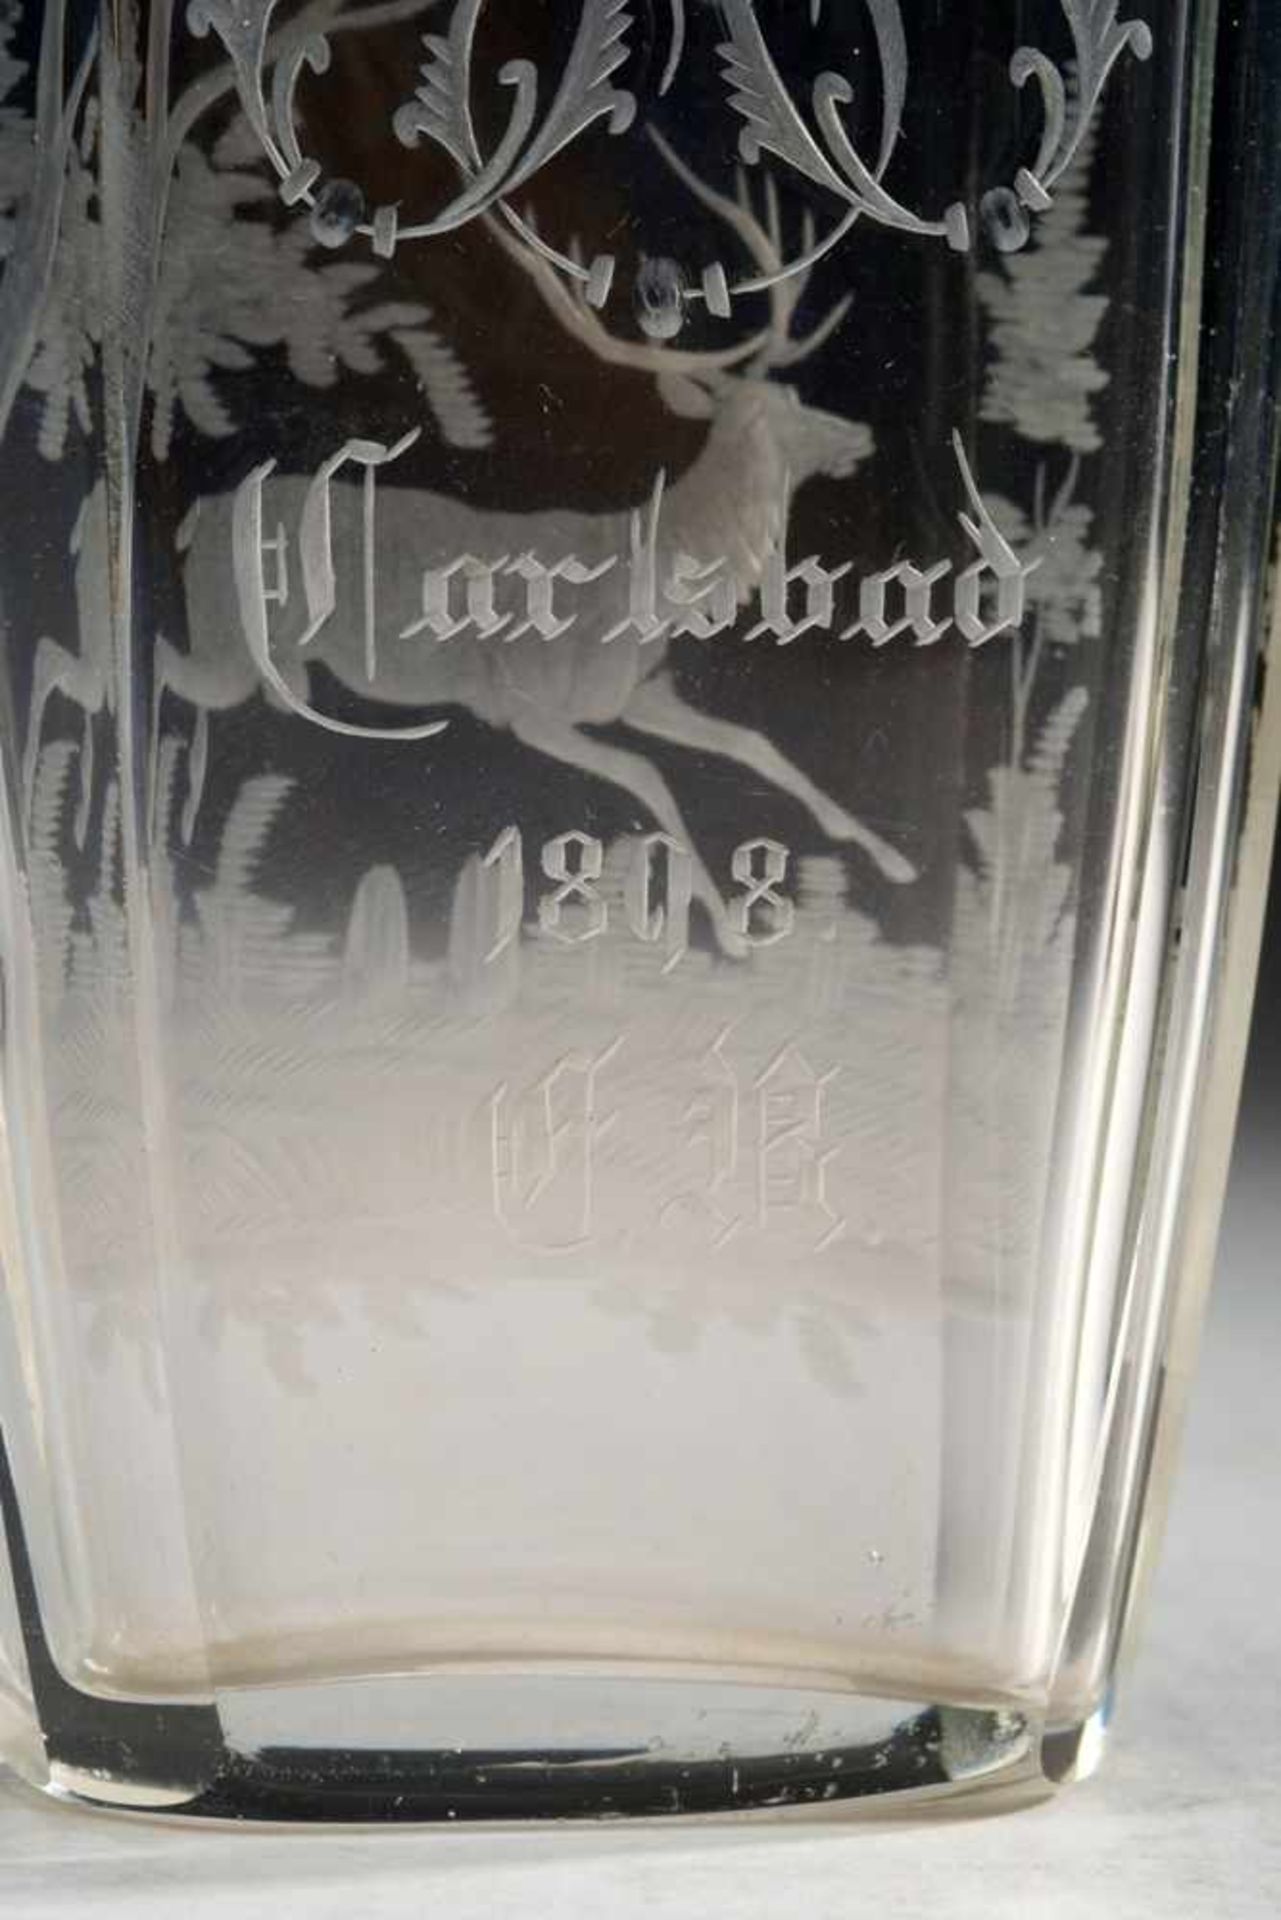 Andenkenbecher "Carlsbad"Farbloses Glas. Formgeblasen u. geschliffen. Flacher achtkantiger Korpus. - Image 2 of 2